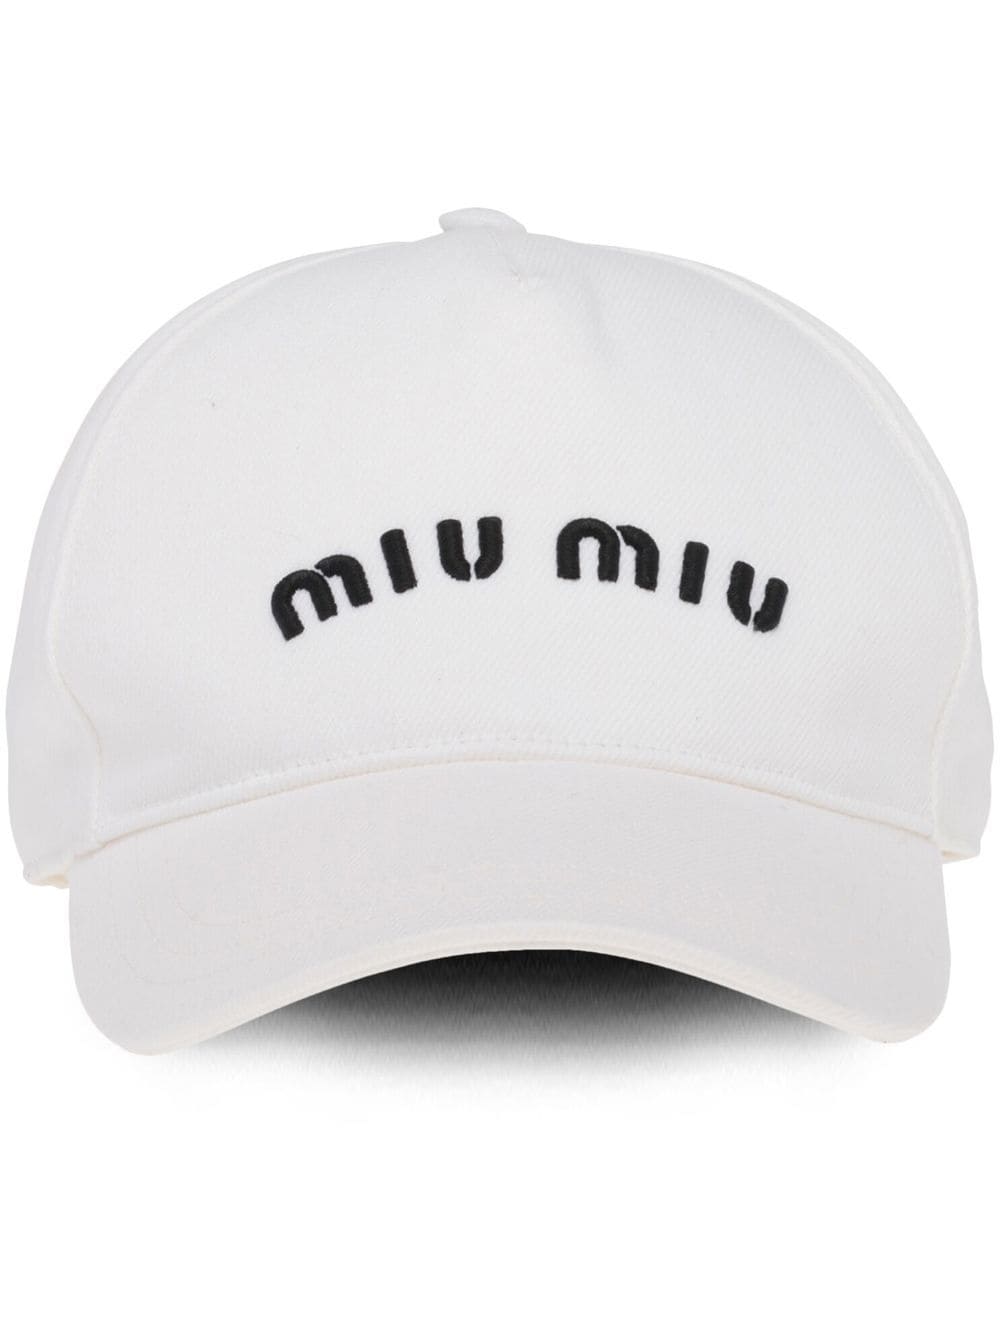 MIUMIU WHITE LOGO CAP